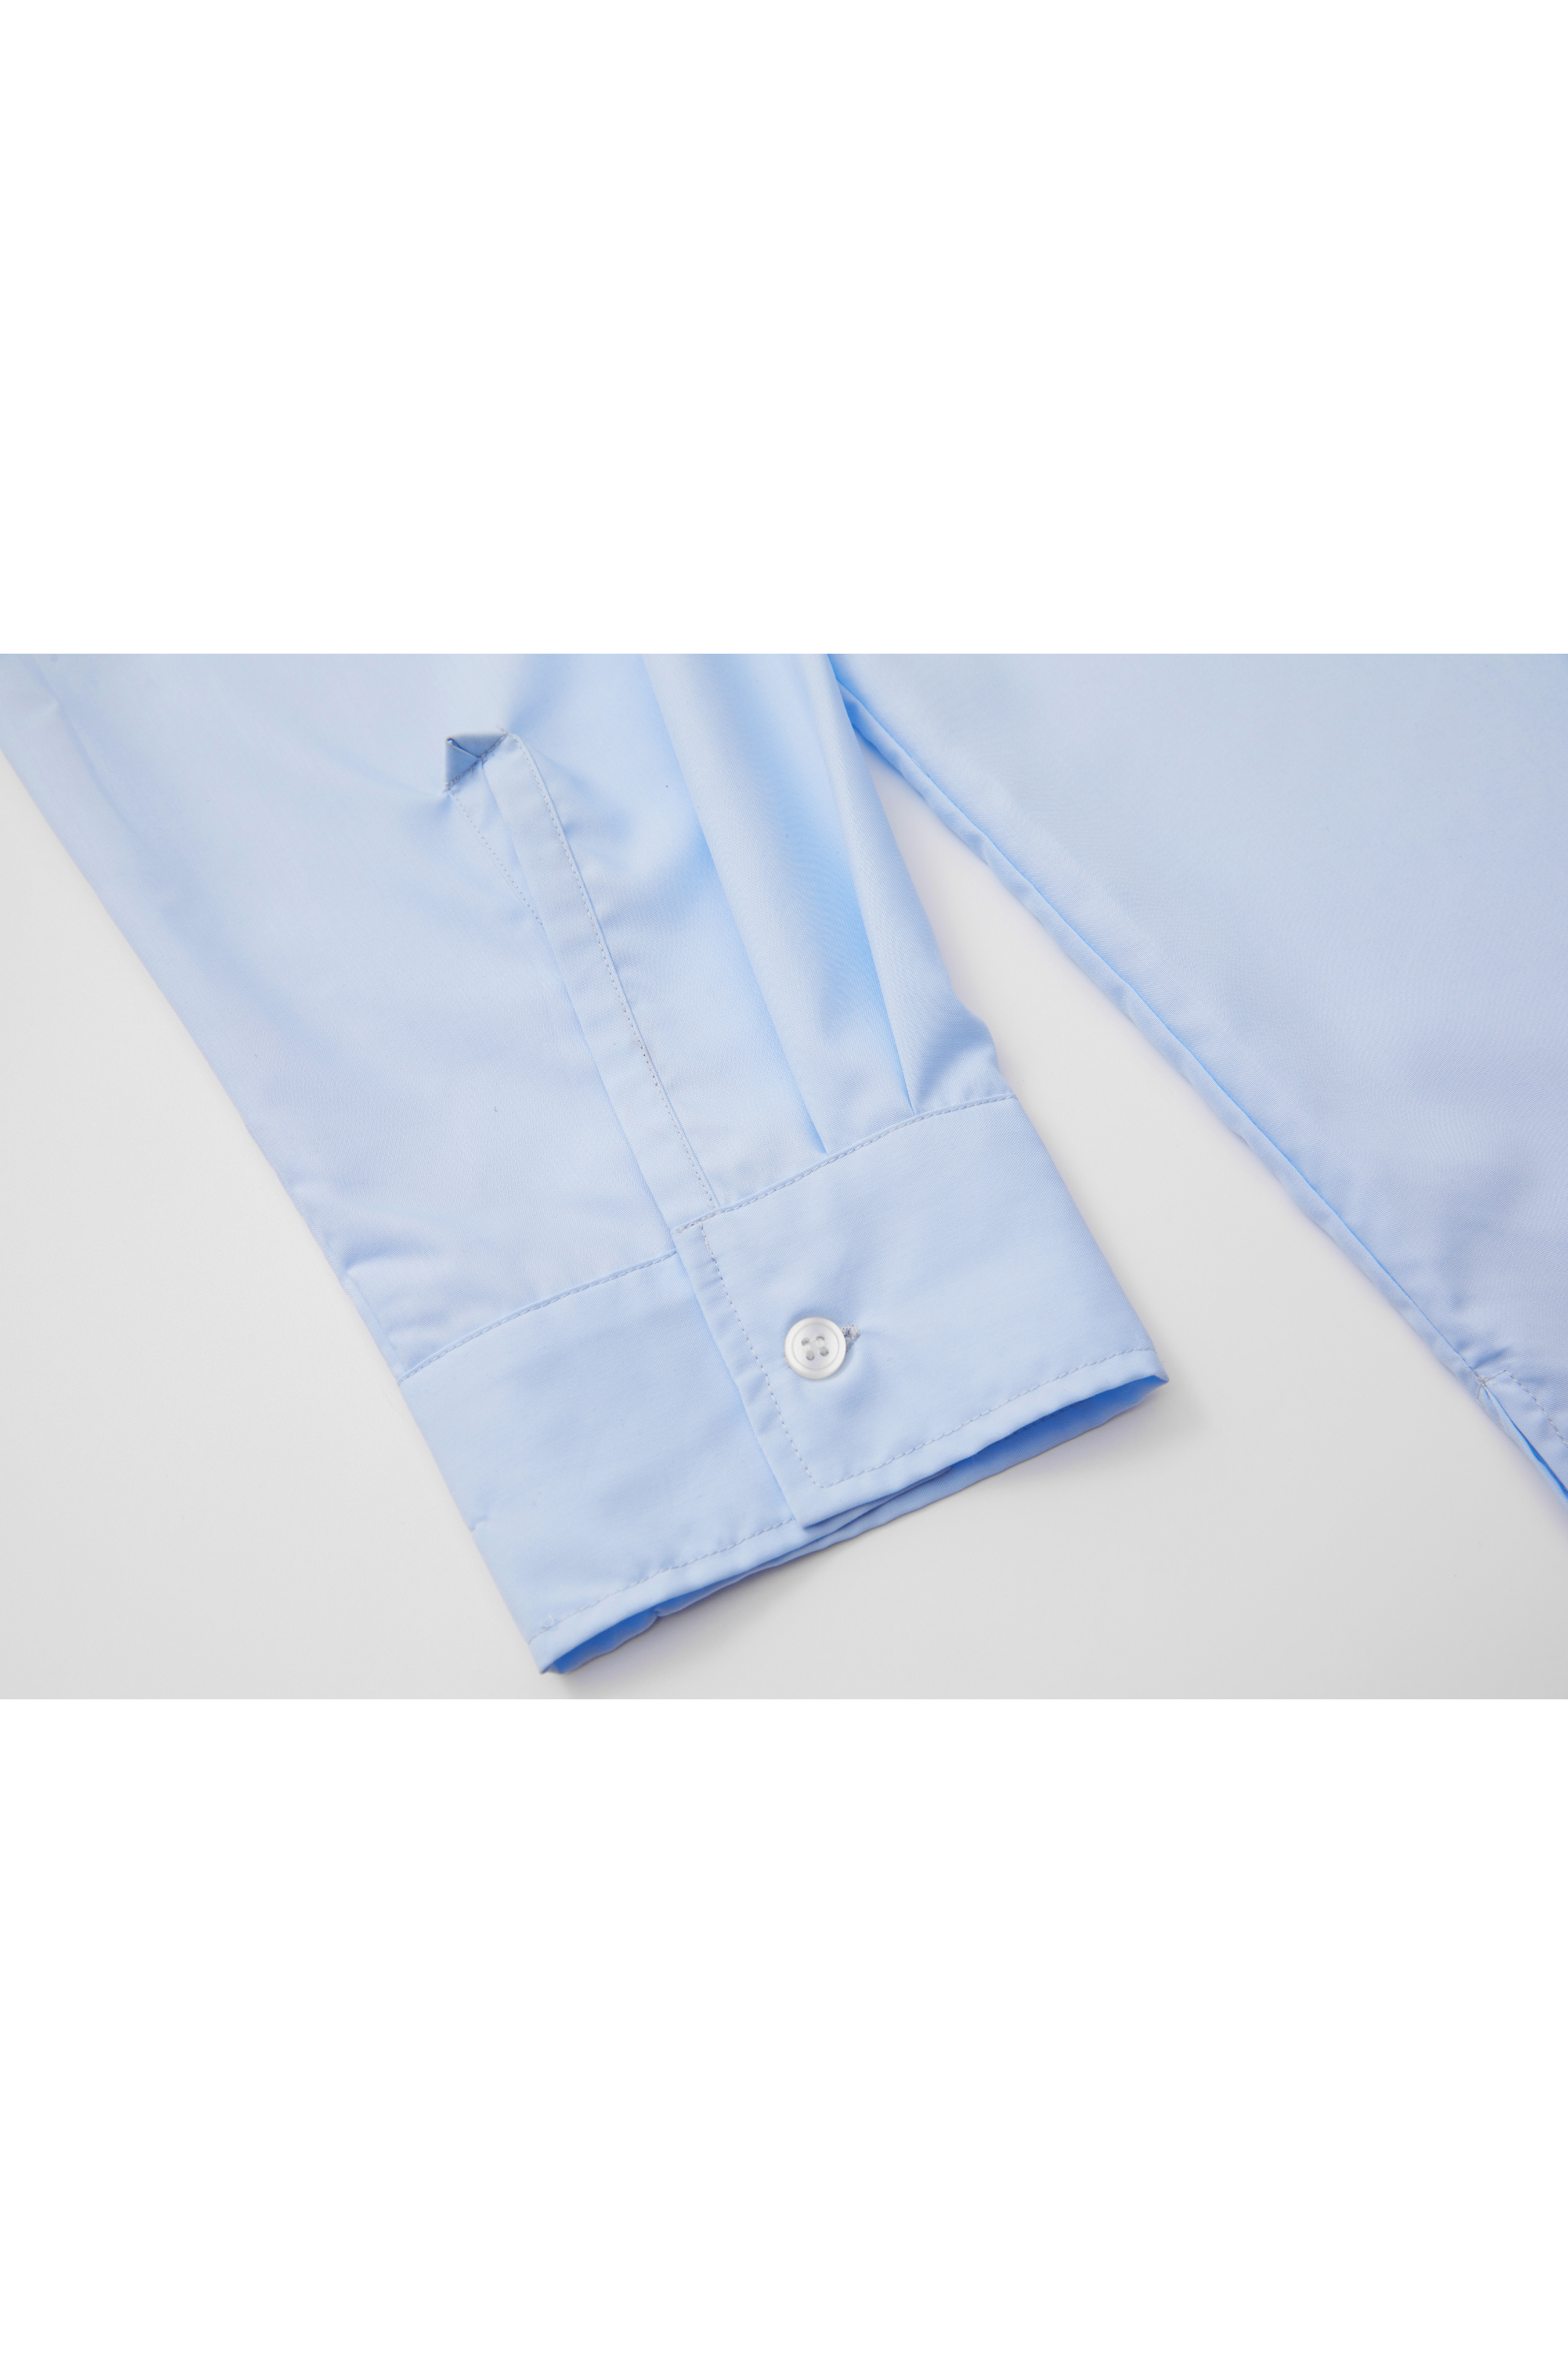 BASIC SMOOTH COLOR SHIRT / ベーシックスムースカラーシャツ